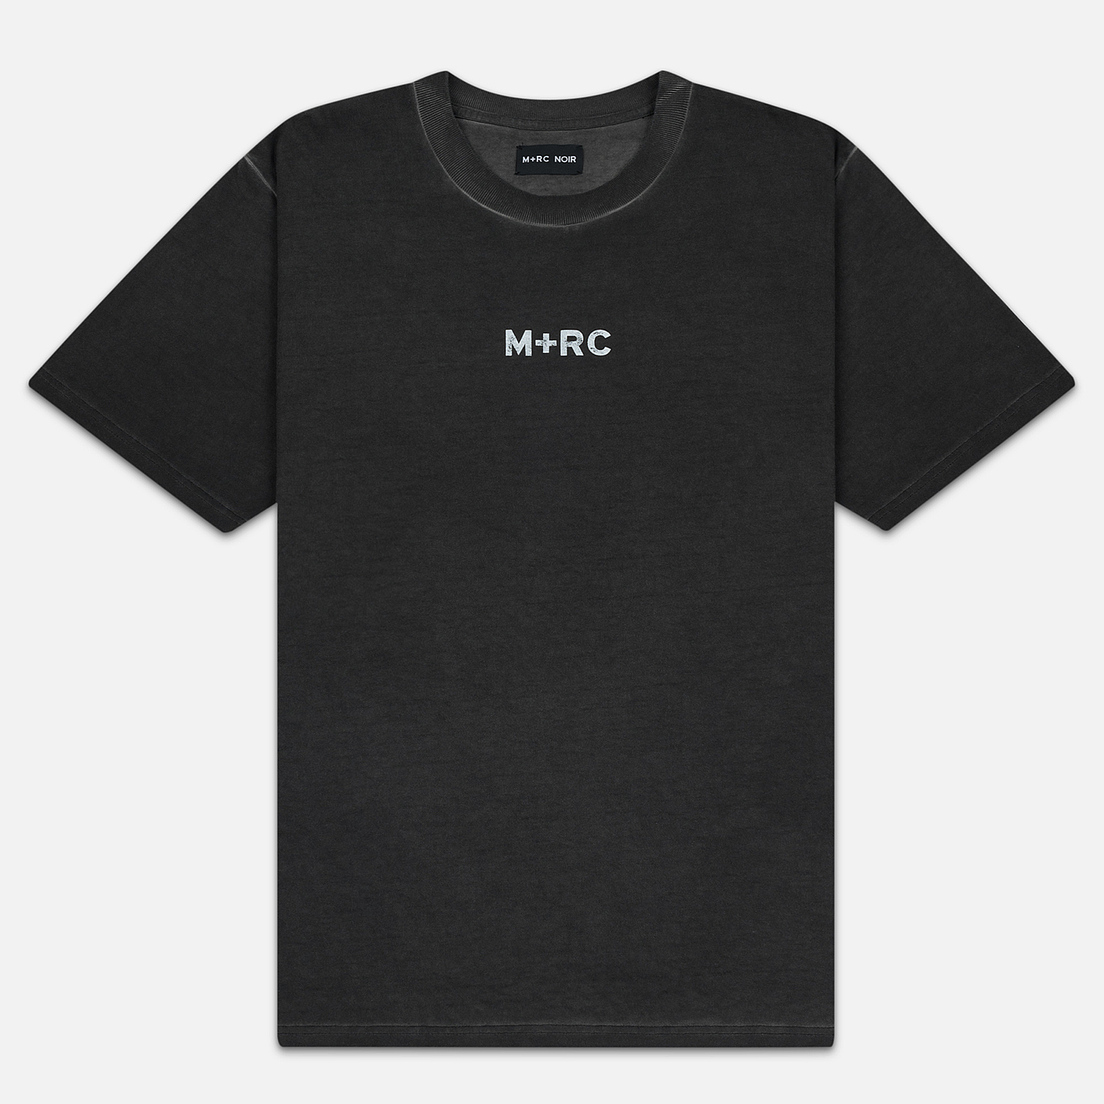 M+RC Noir Мужская футболка Spring Break